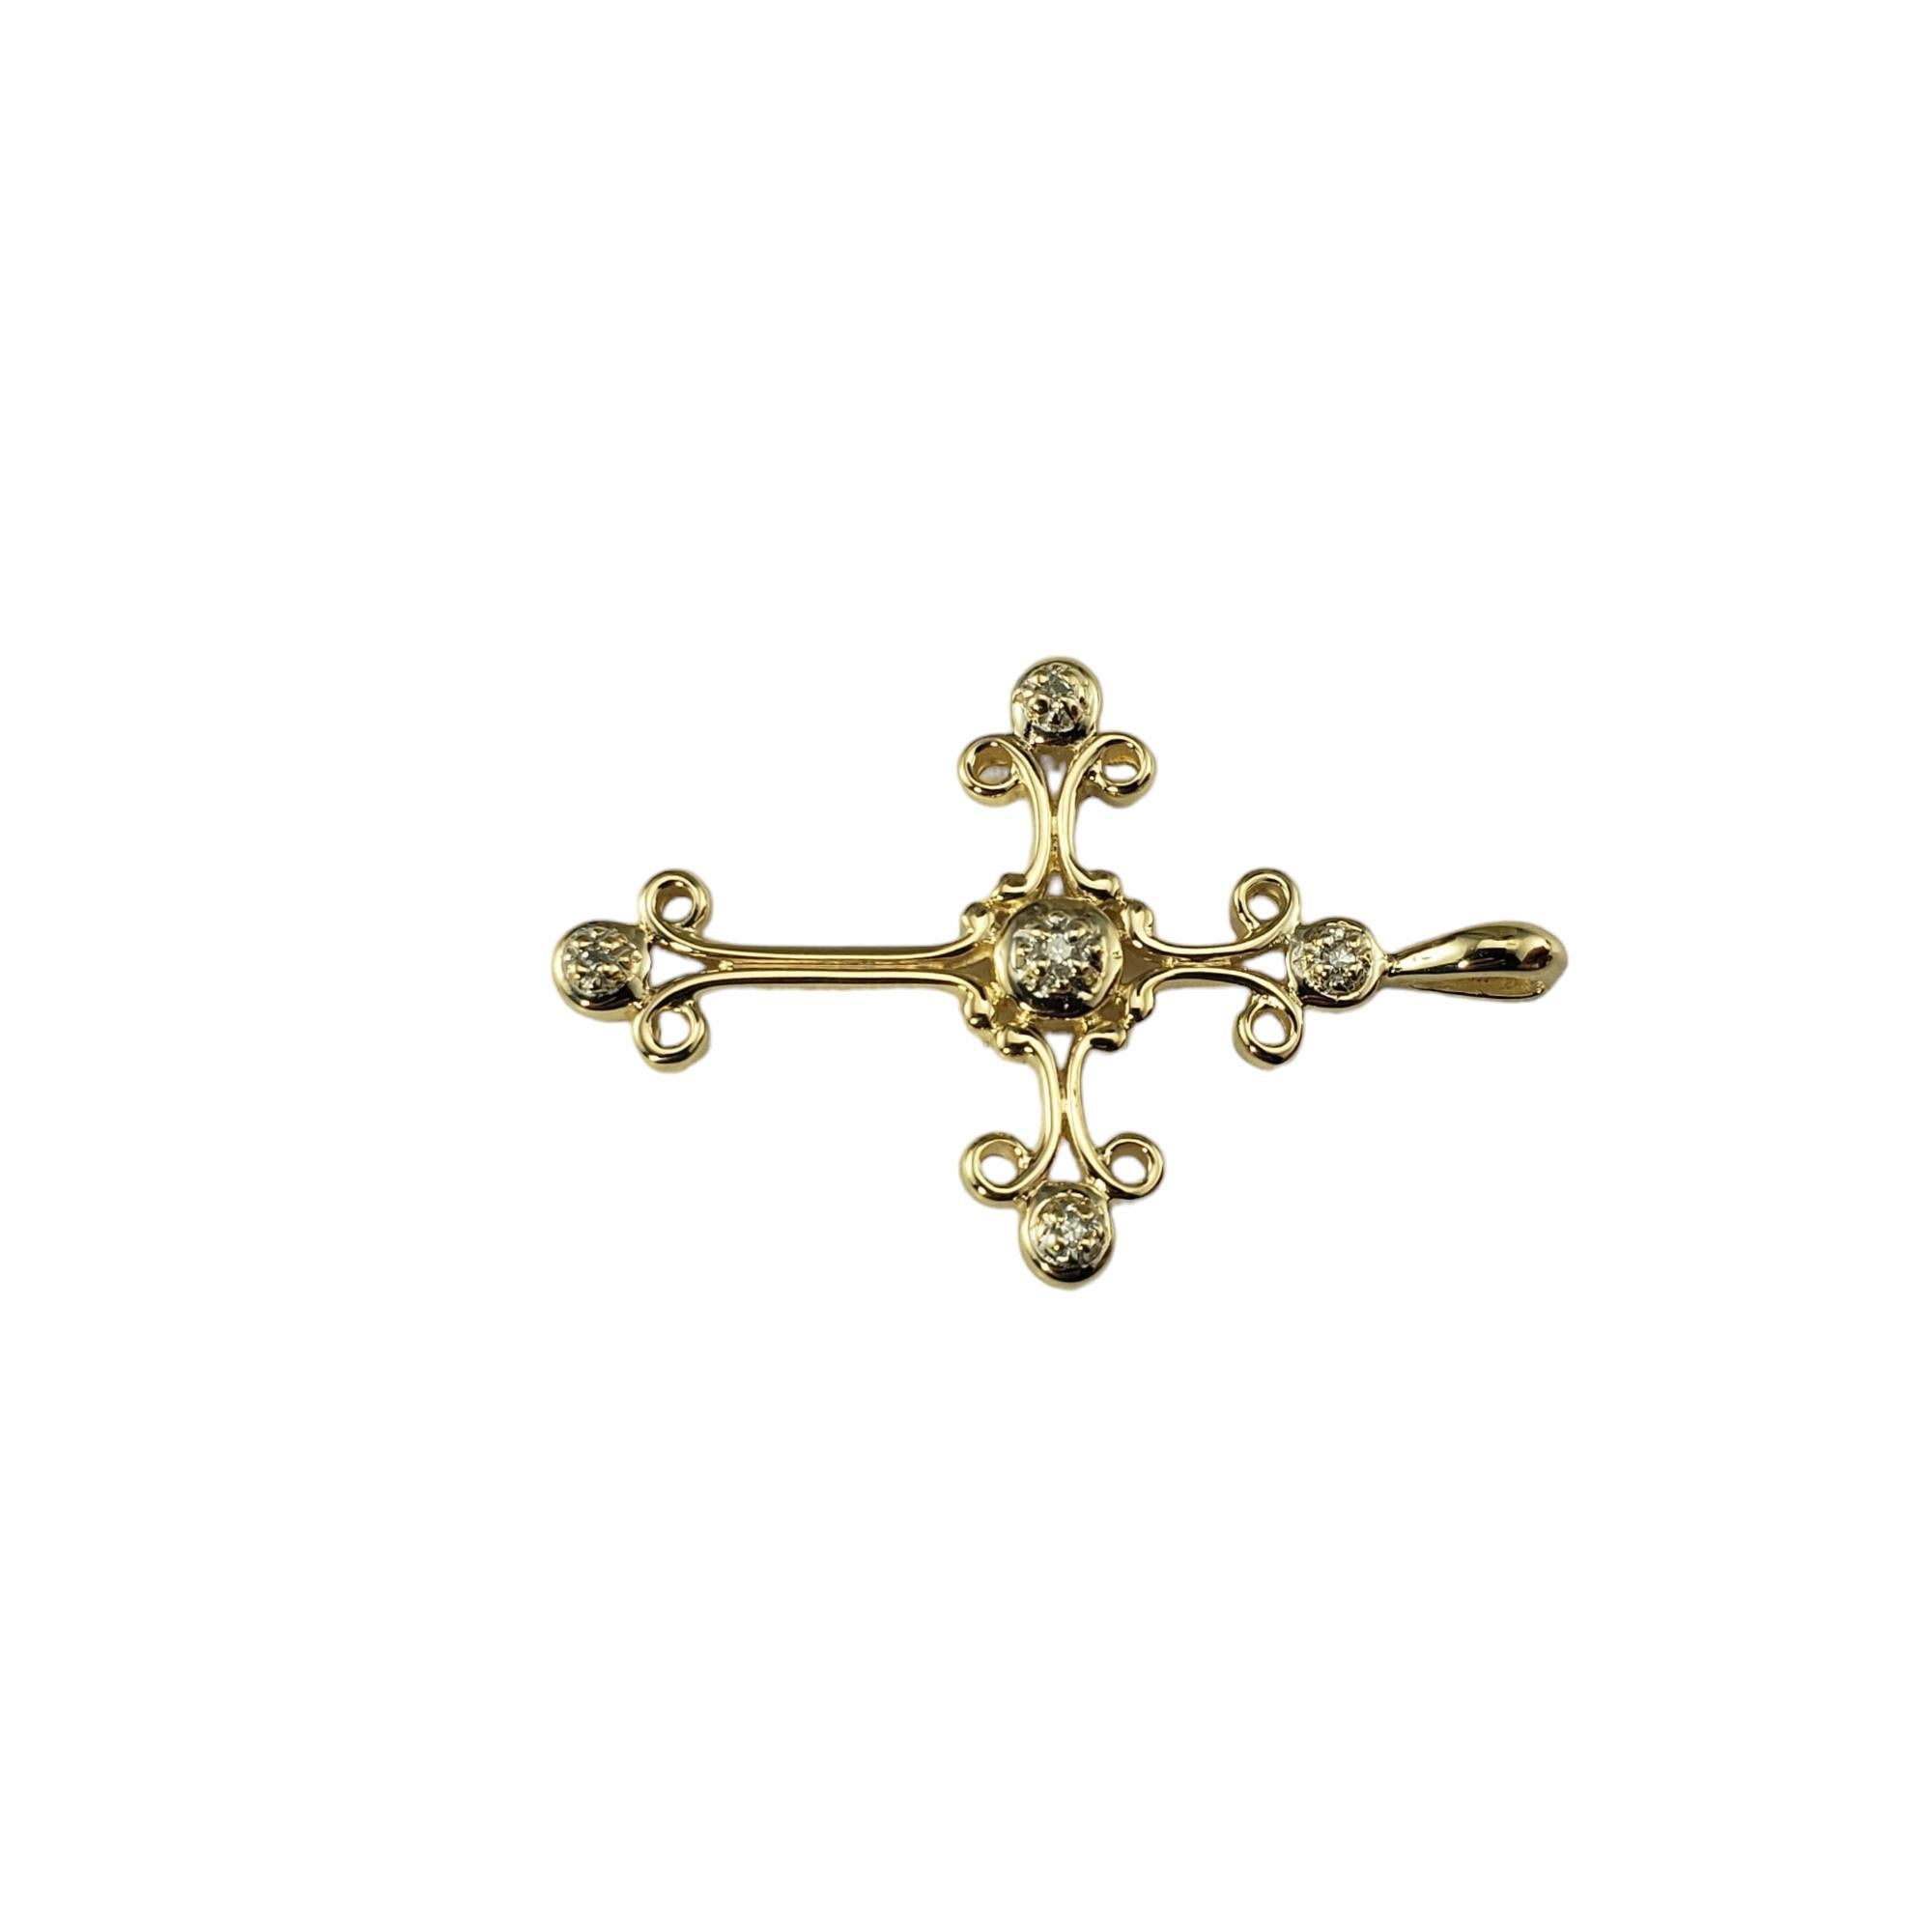 14 Karat Gelbgold und Diamant-Kreuz-Anhänger

Dieser elegante Kreuzanhänger verfügt über fünf runde Diamanten im Einzelschliff, die in wunderschön detailliertes 14-karätiges Gelbgold gefasst sind.

Ungefähres Gesamtgewicht der Diamanten: 05